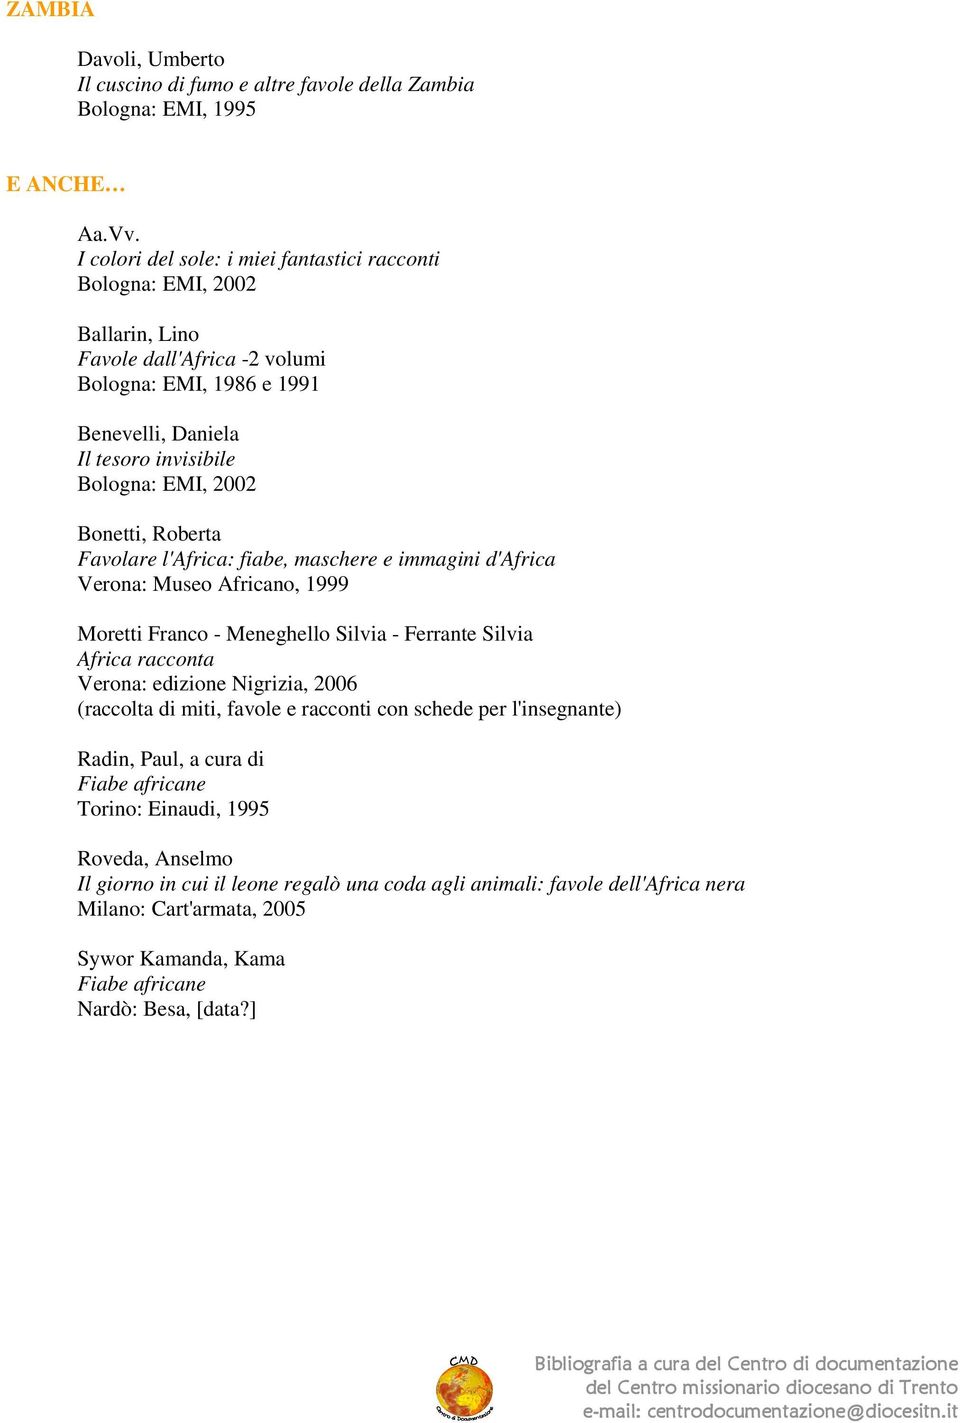 fiabe, maschere e immagini d'africa Verona: Museo Africano, 1999 Moretti Franco - Meneghello Silvia - Ferrante Silvia Africa racconta Verona: edizione Nigrizia, 2006 (raccolta di miti, favole